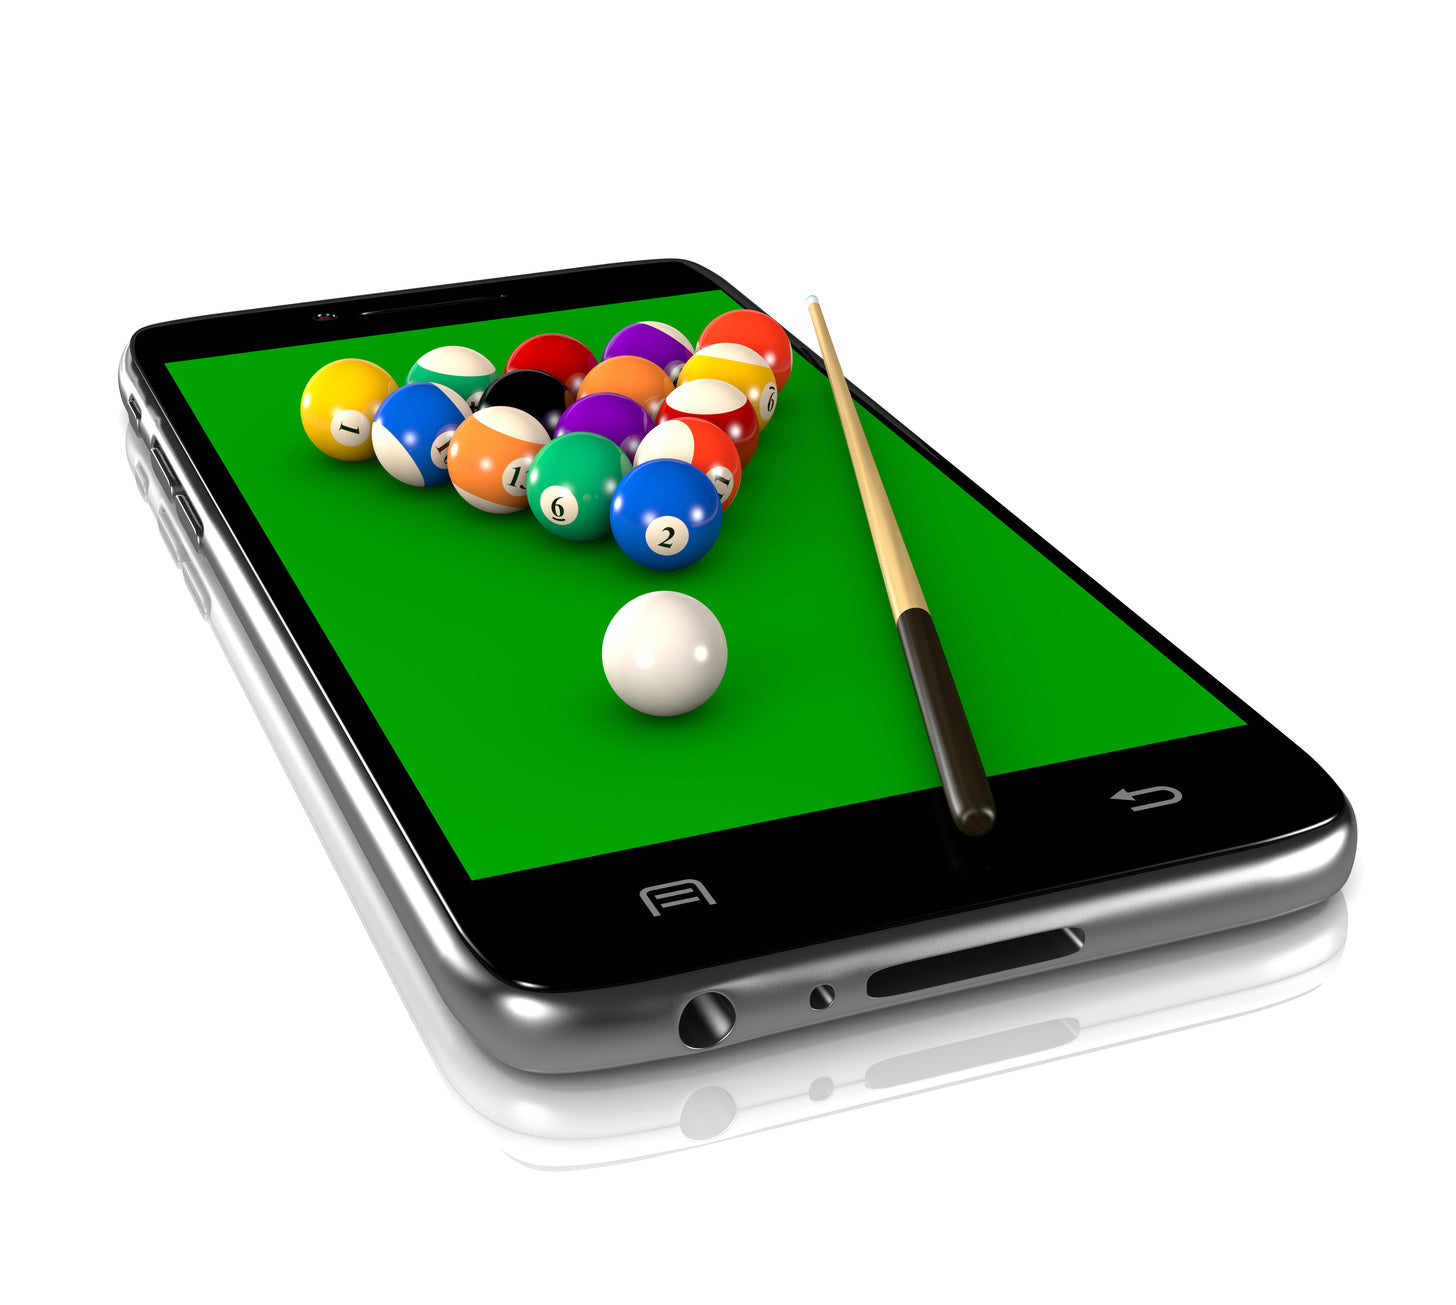 8 Ball Billard - Pool Billards for Android - Free App Download